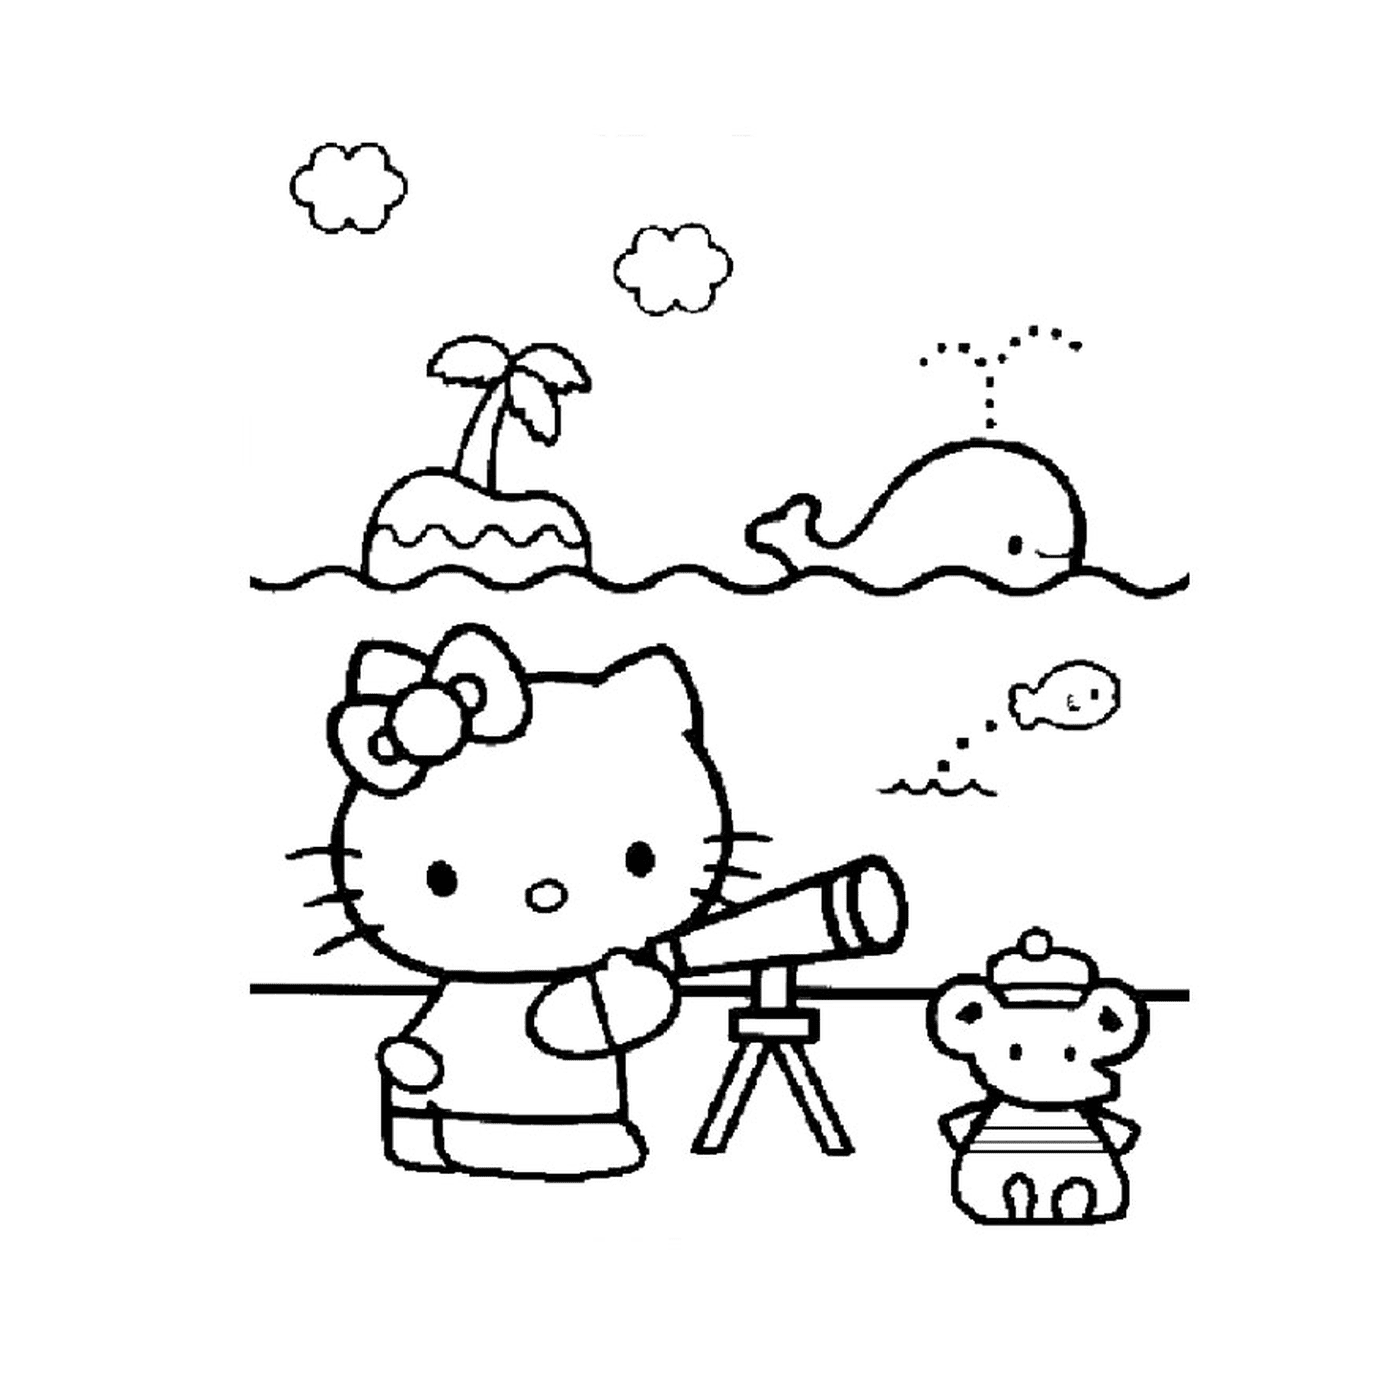  Здравствуй, Китти смотрит через телескоп на плюшевого медведя 